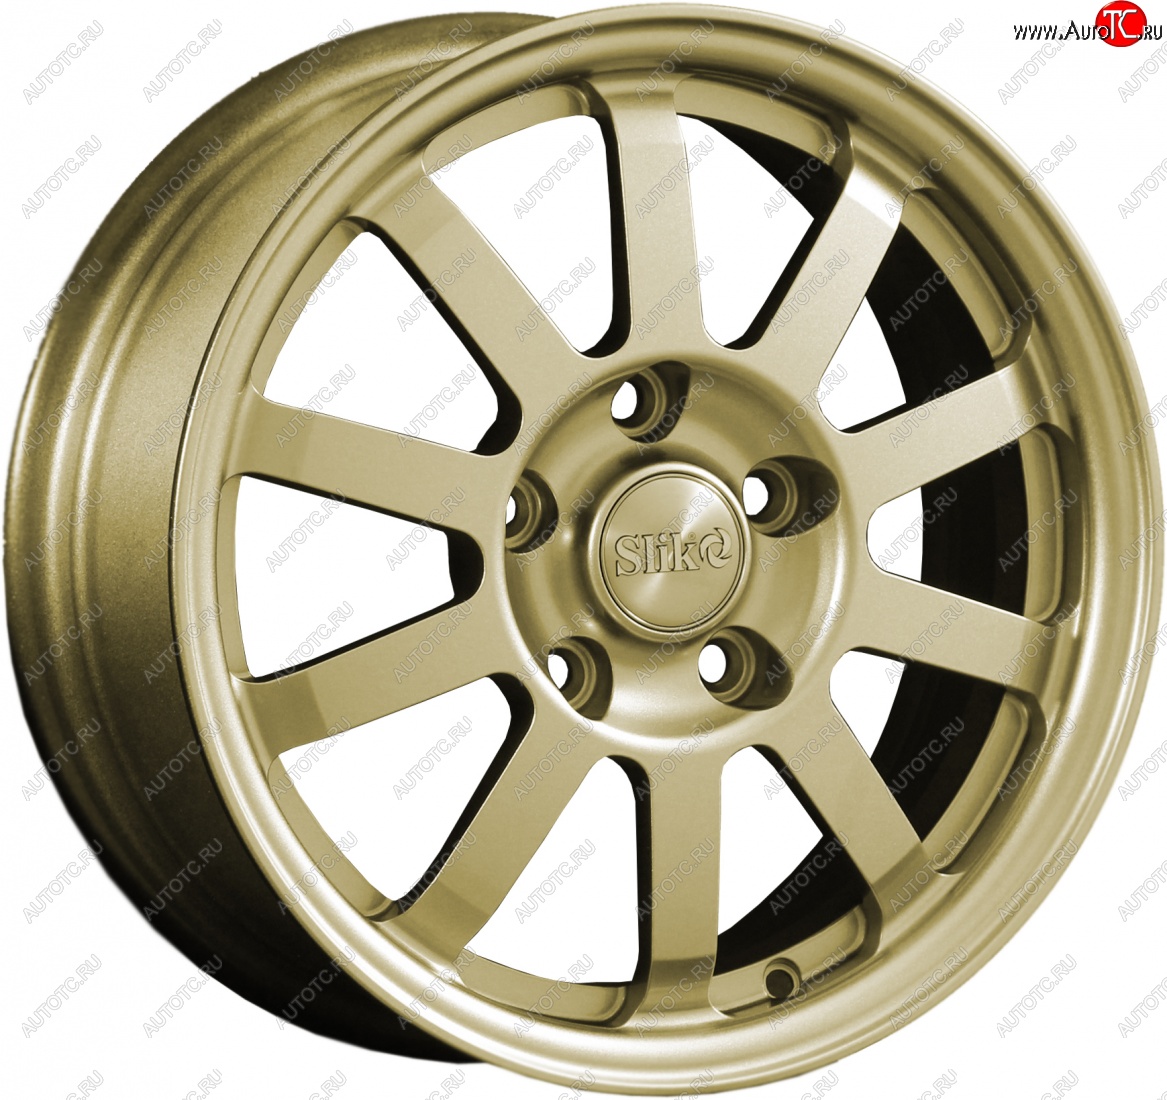 11 399 р. Кованый диск Slik Classik 6x15 (Металлик золотой) Mazda Verisa DC (2004-2015) 4x100.0xDIA54.1xET45.0 (Цвет: Металлик золотой)